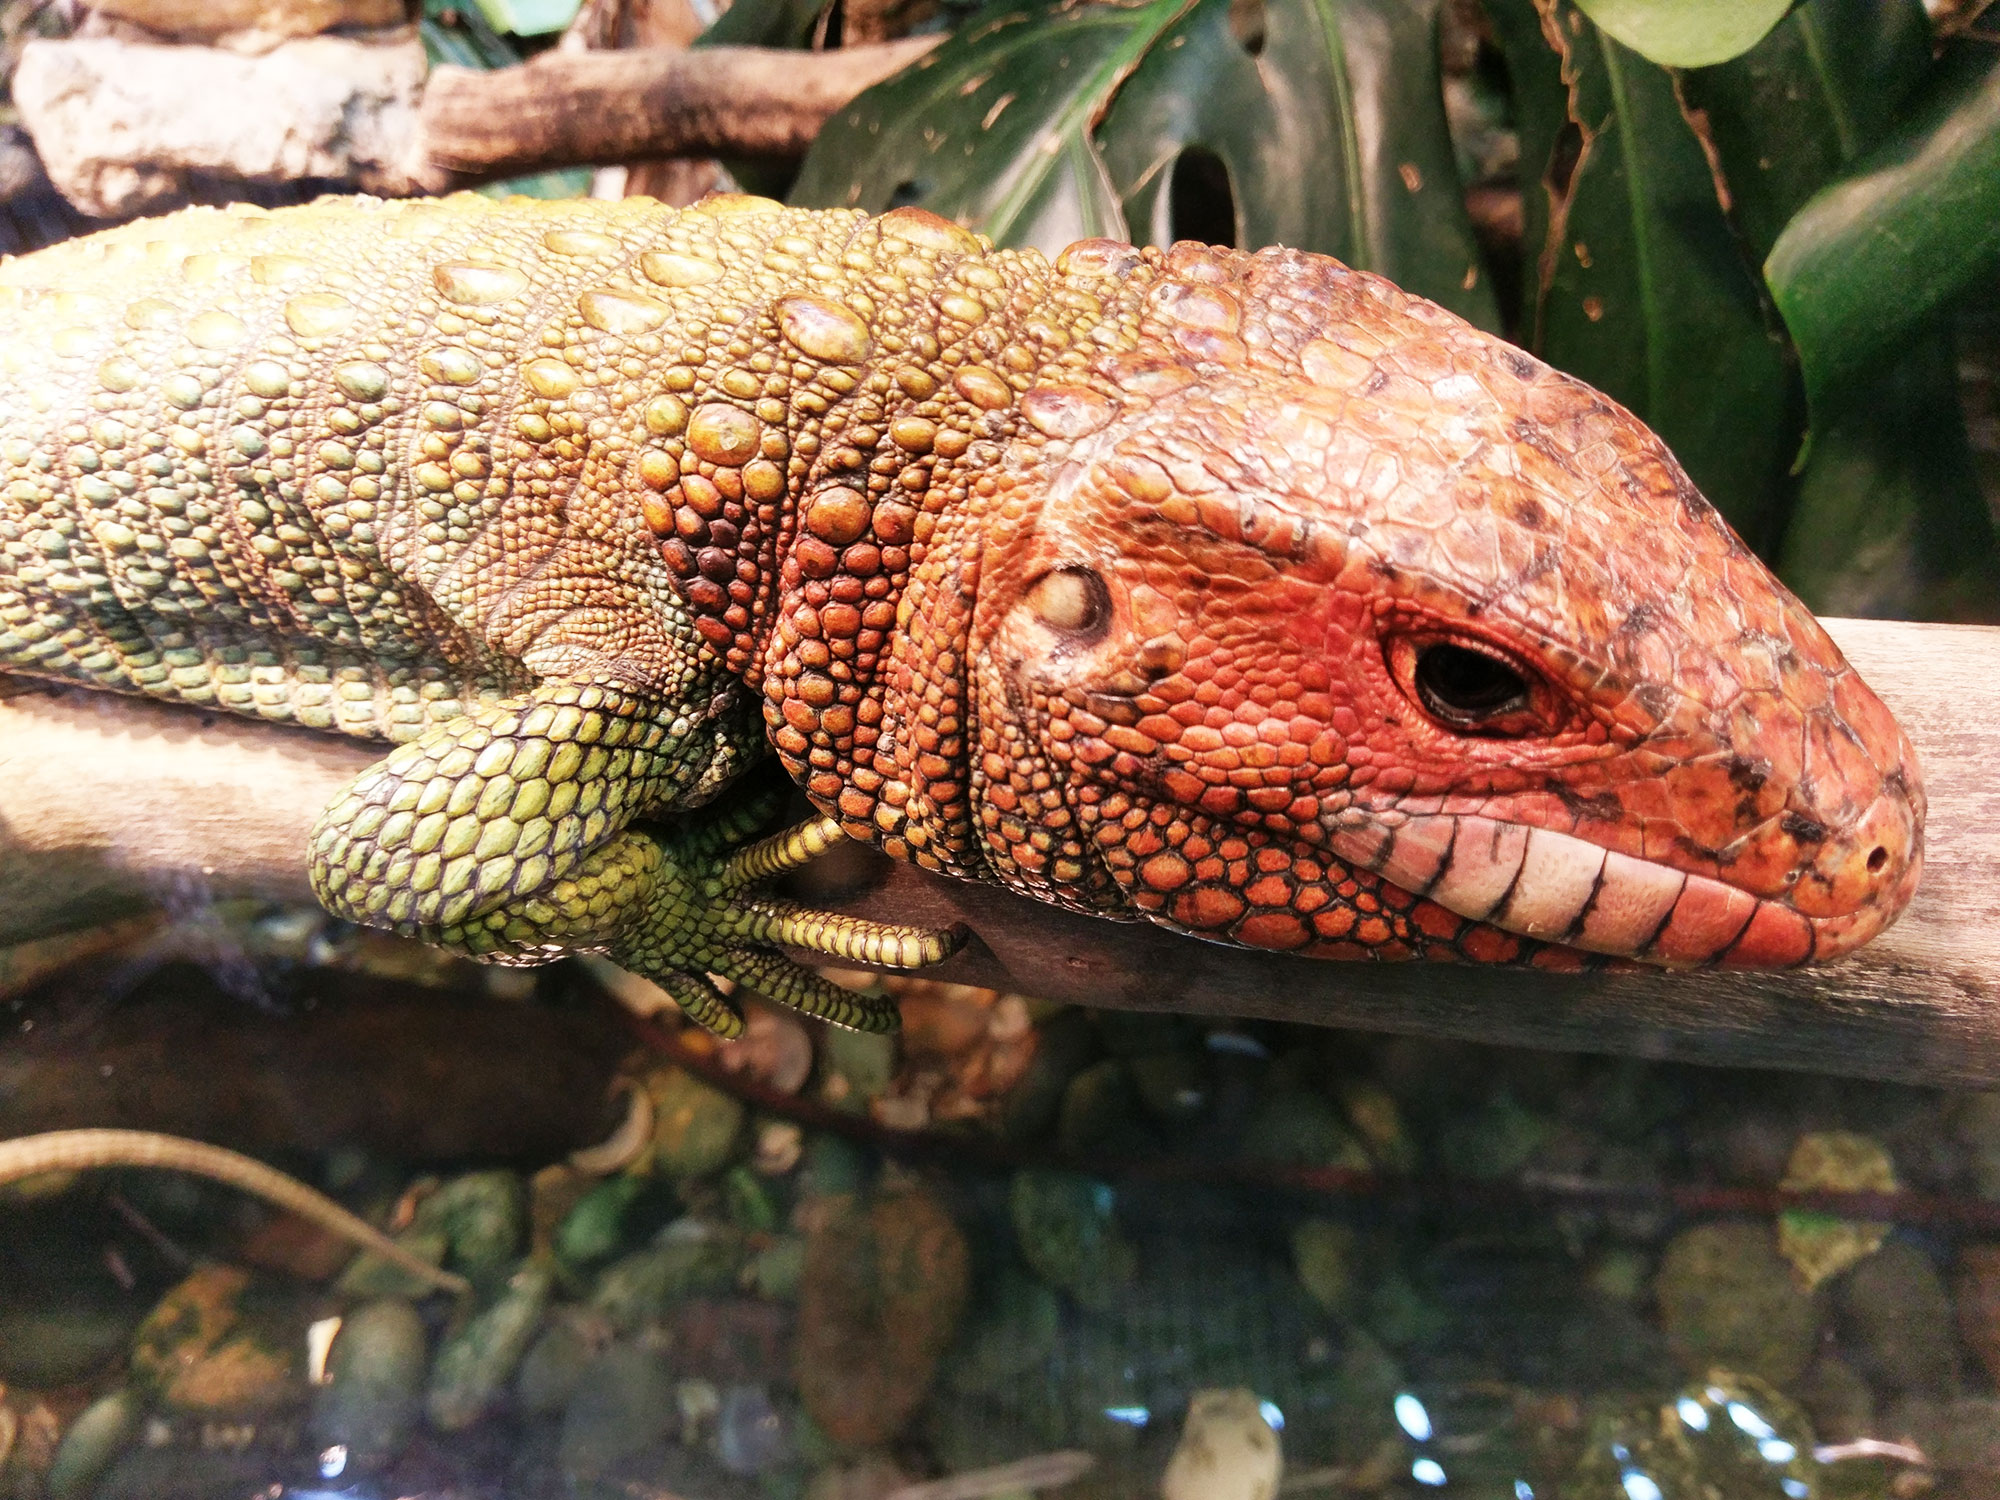 An unamused reptile at the Dallas Zoo.